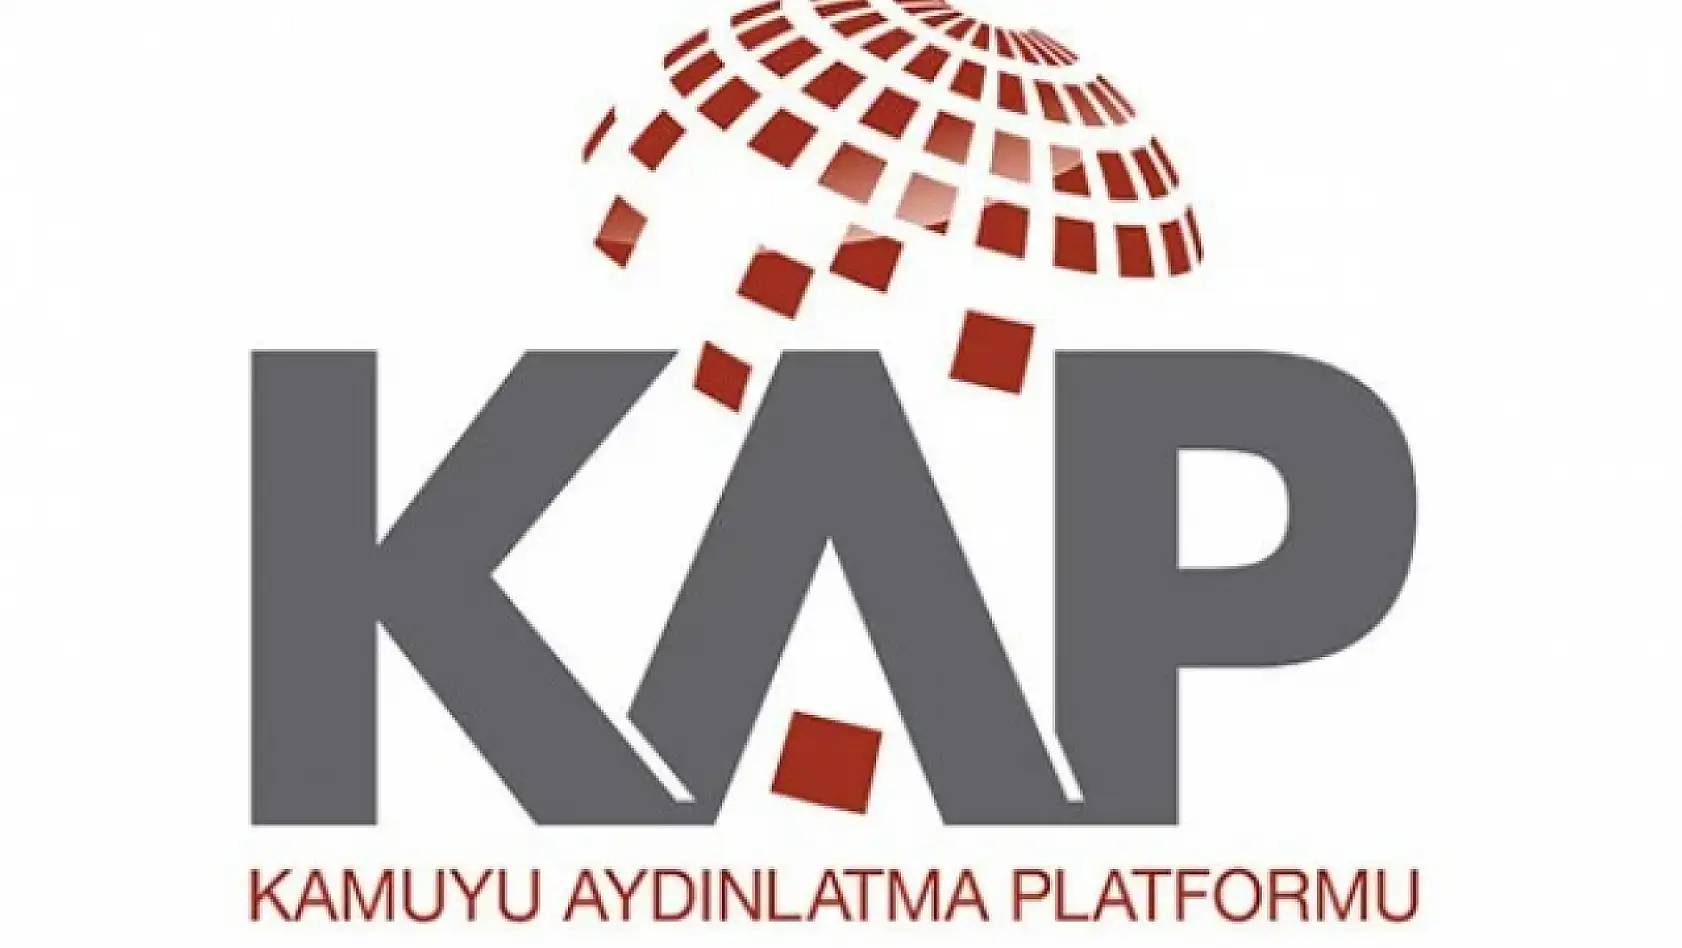 Borsa'dan işlem gören Kayseri firması Formet'den KAP'a bildiri?